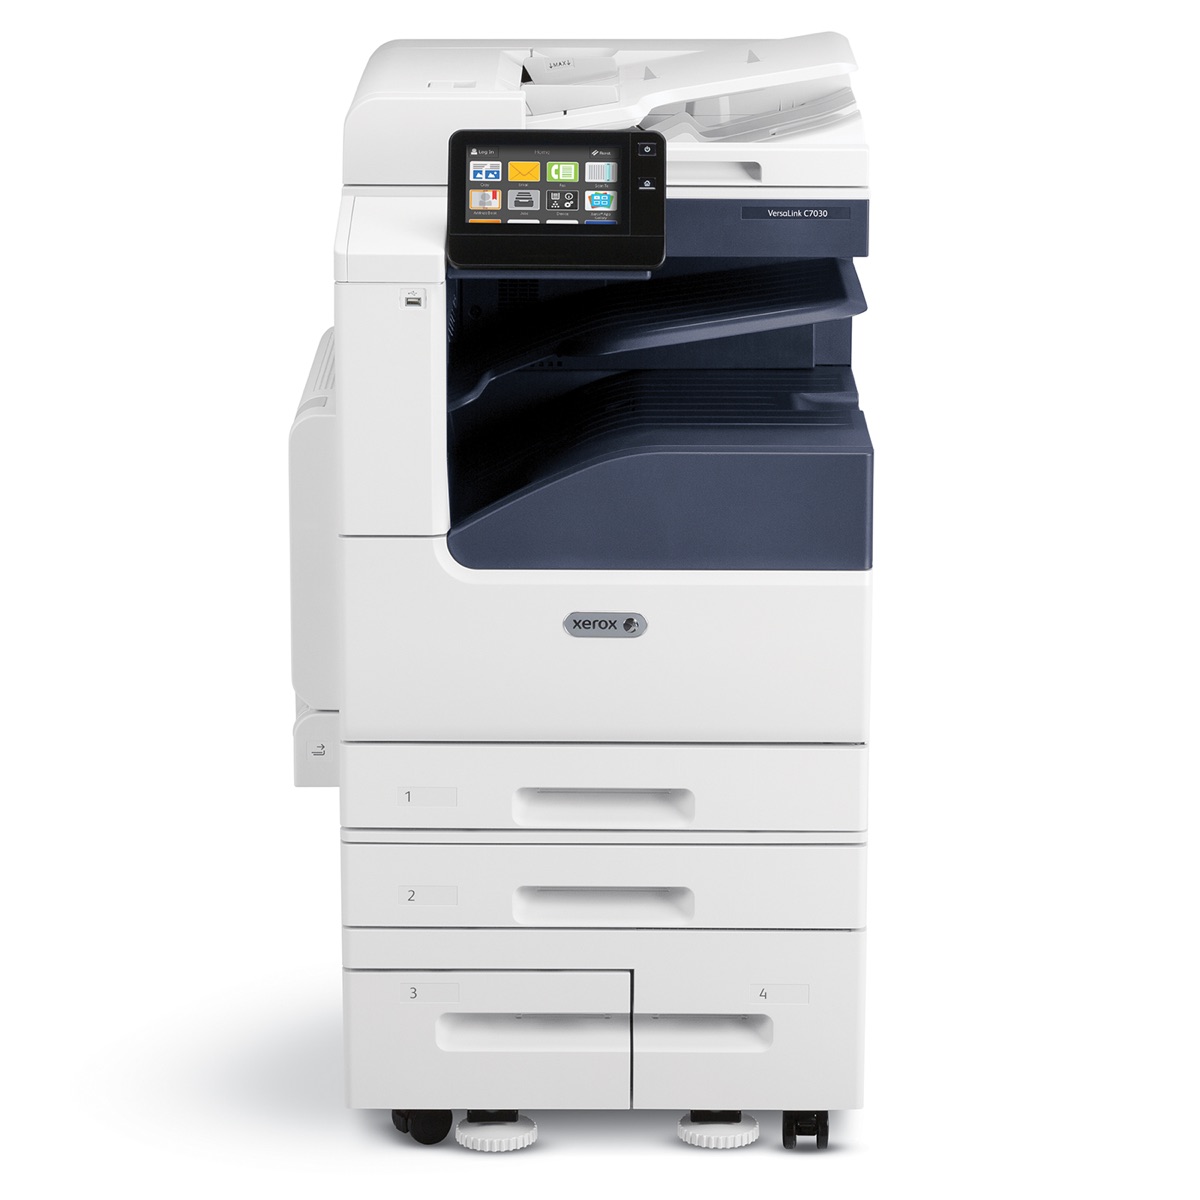 Xerox Copiers:  The Xerox VersaLink C7025/DS2 Copier